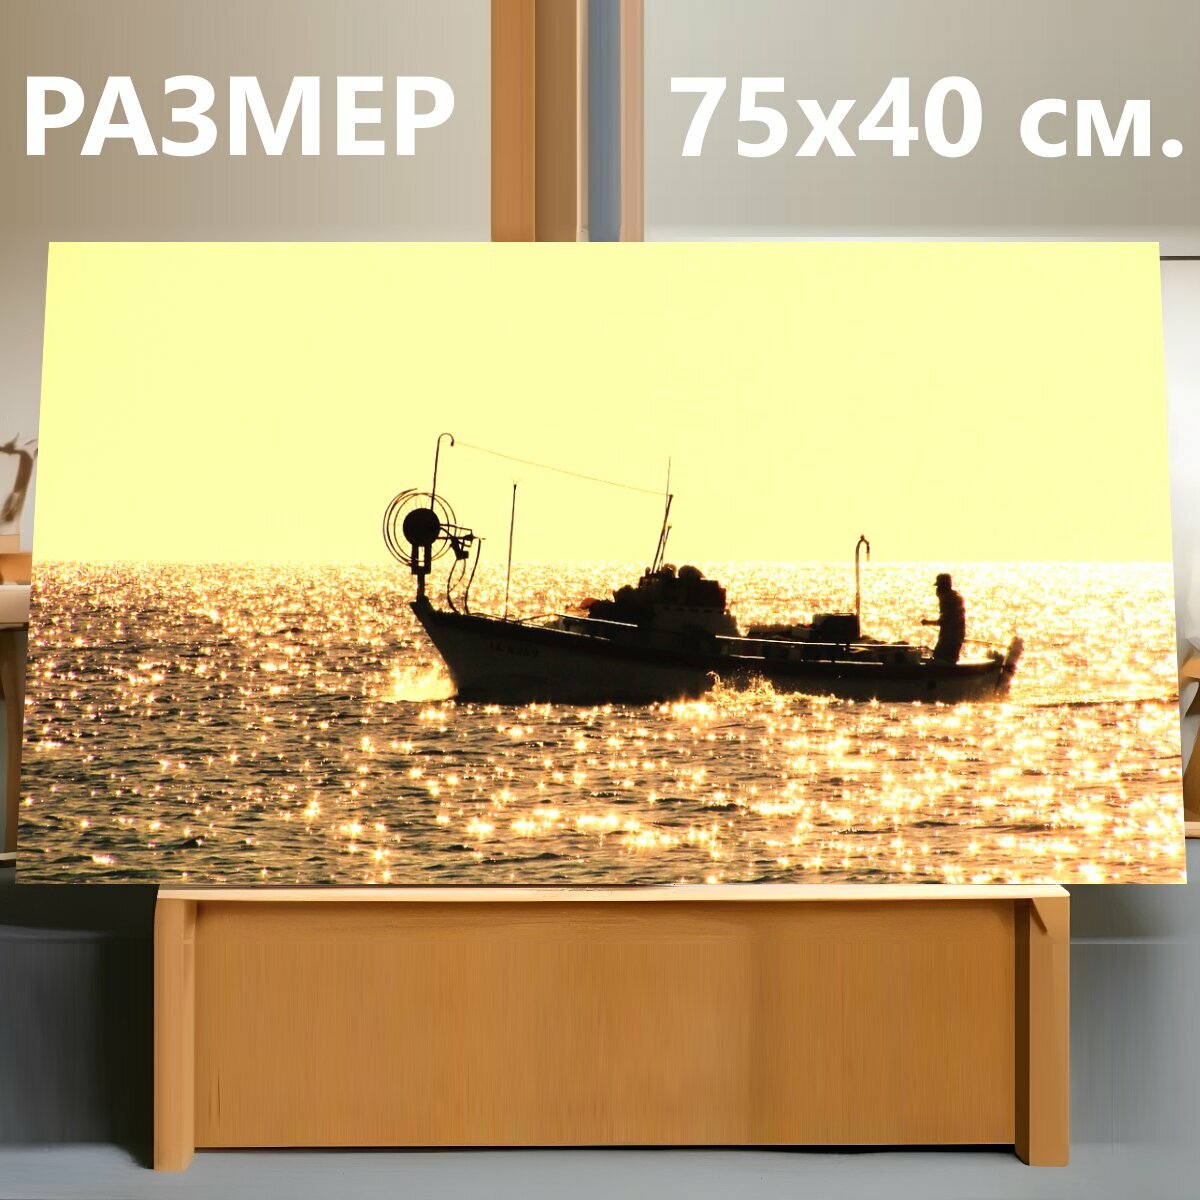 Картина на холсте "Кипр, айя напа, рыболовная лодка" на подрамнике 75х40 см. для интерьера